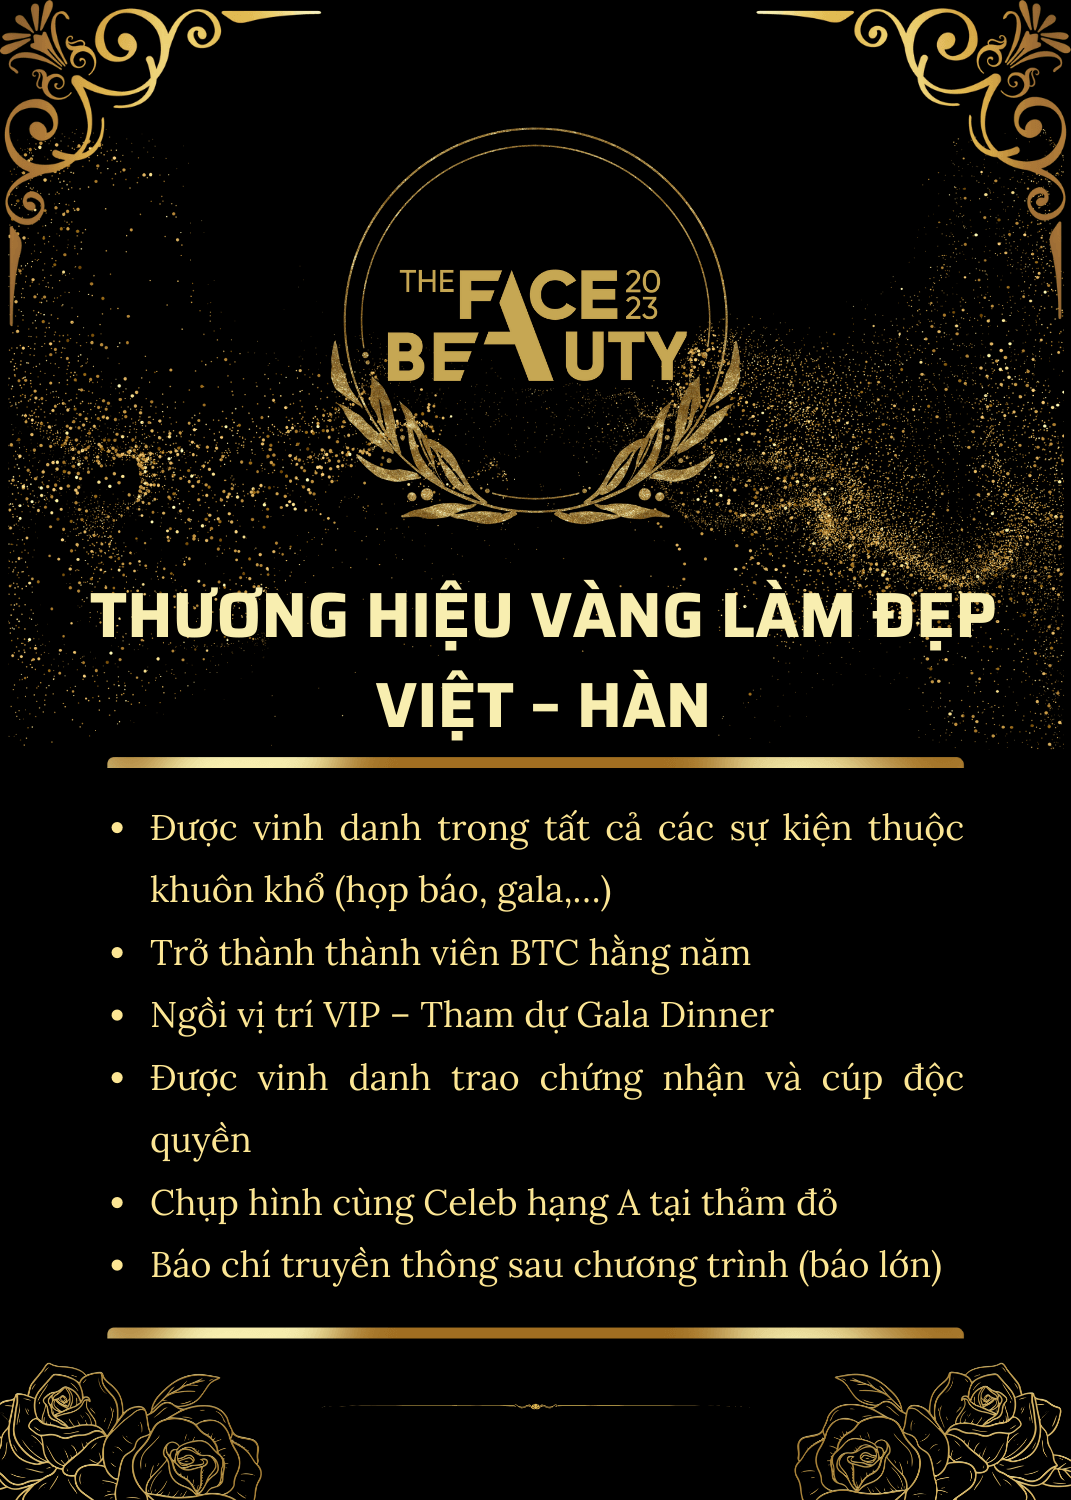 Thương hiệu vàng làm đẹp Việt Hàn